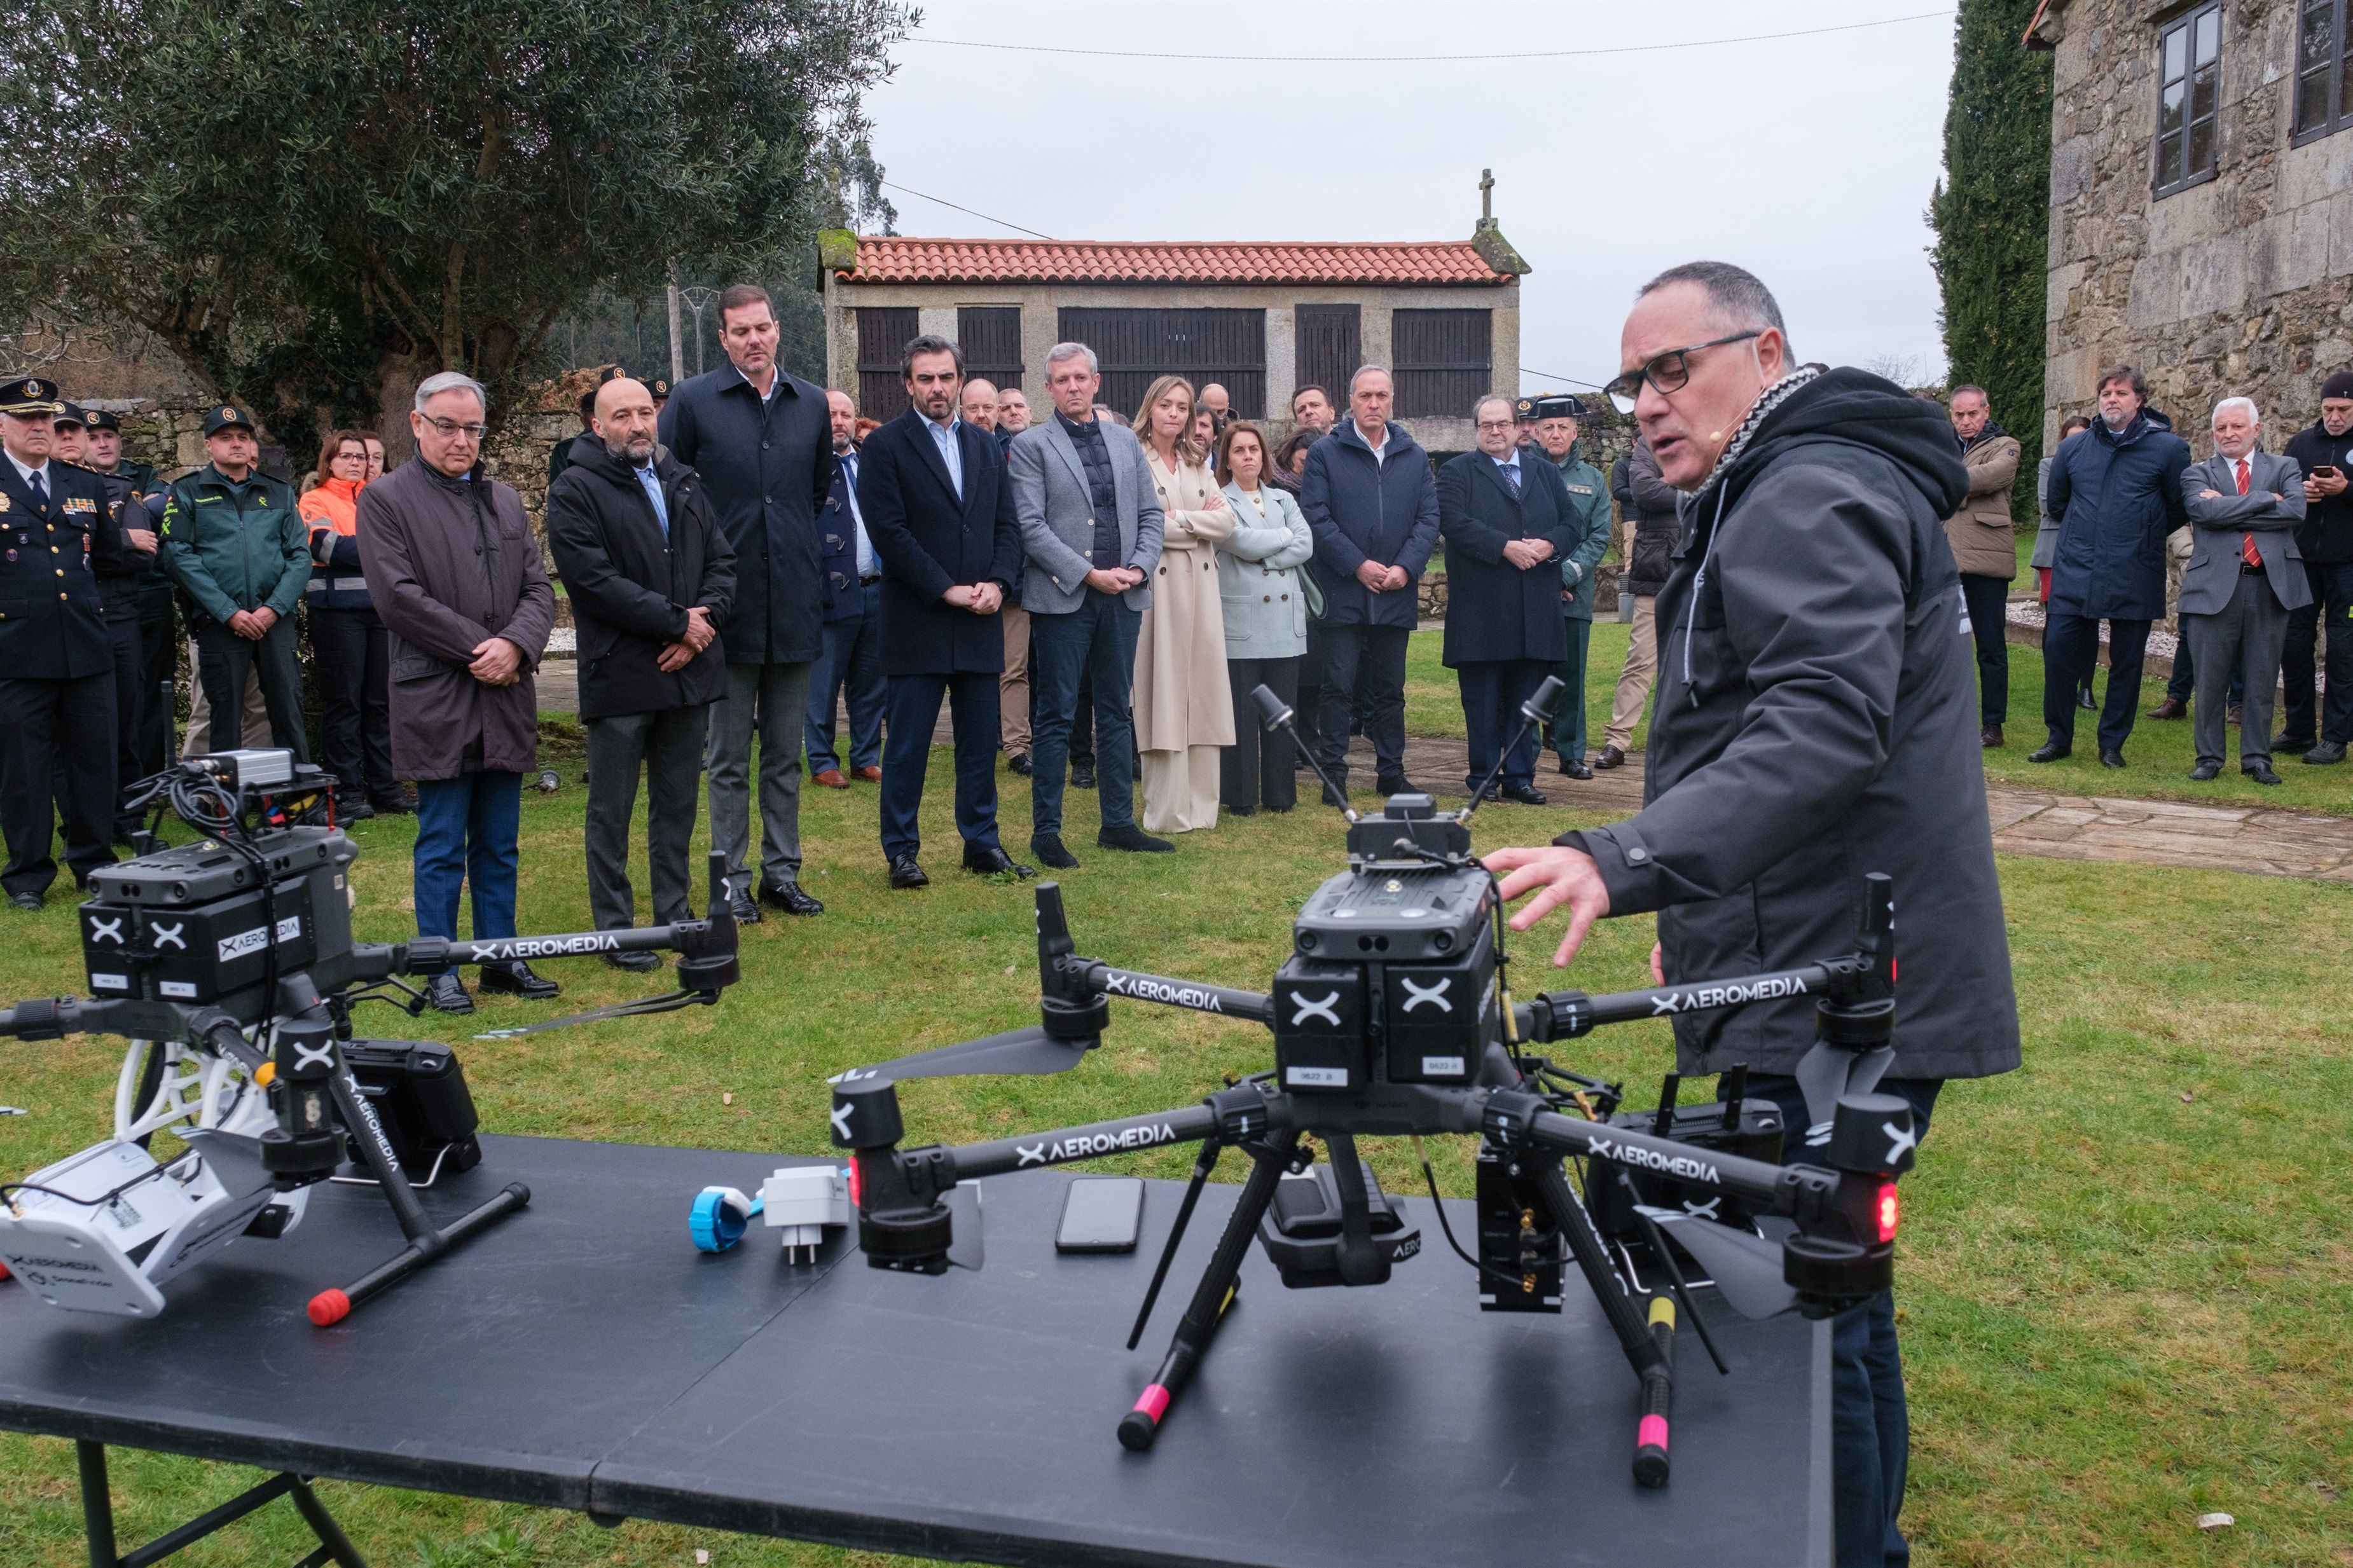 El nuevo sistema de drones con IA podría localizar a desaparecidos en menos de 48 horas